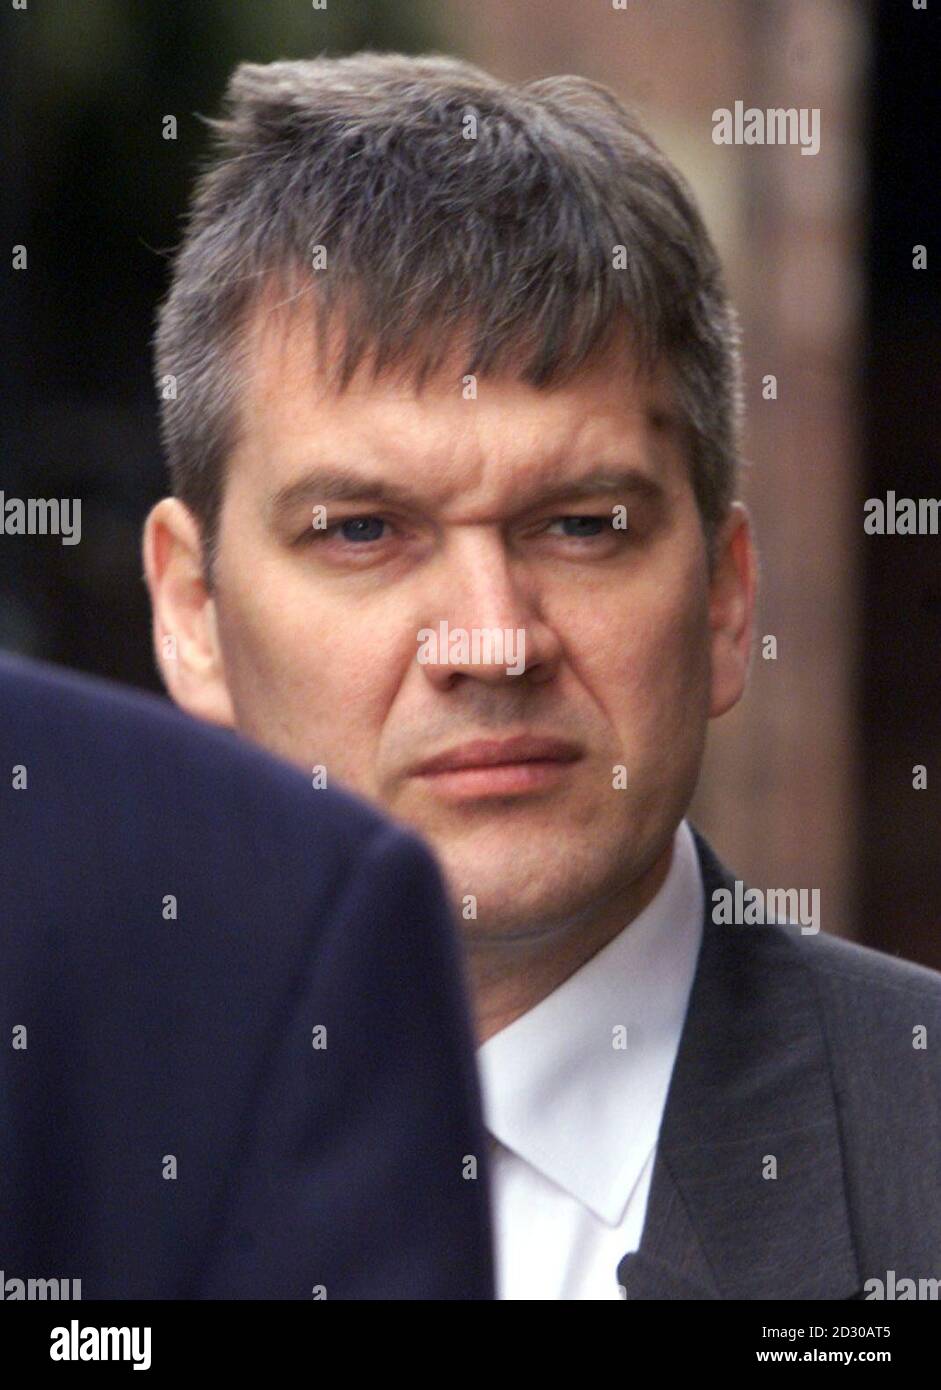 Il dottor Jonathan Chamberlain, 37 anni, arriva alla Newcastle Crown Court il terzo giorno del suo processo. Chamberlain è accusato del rapimento e dell'assalto di due amanti donne dopo che lo hanno confrontato circa la sua infedeltà. Foto Stock